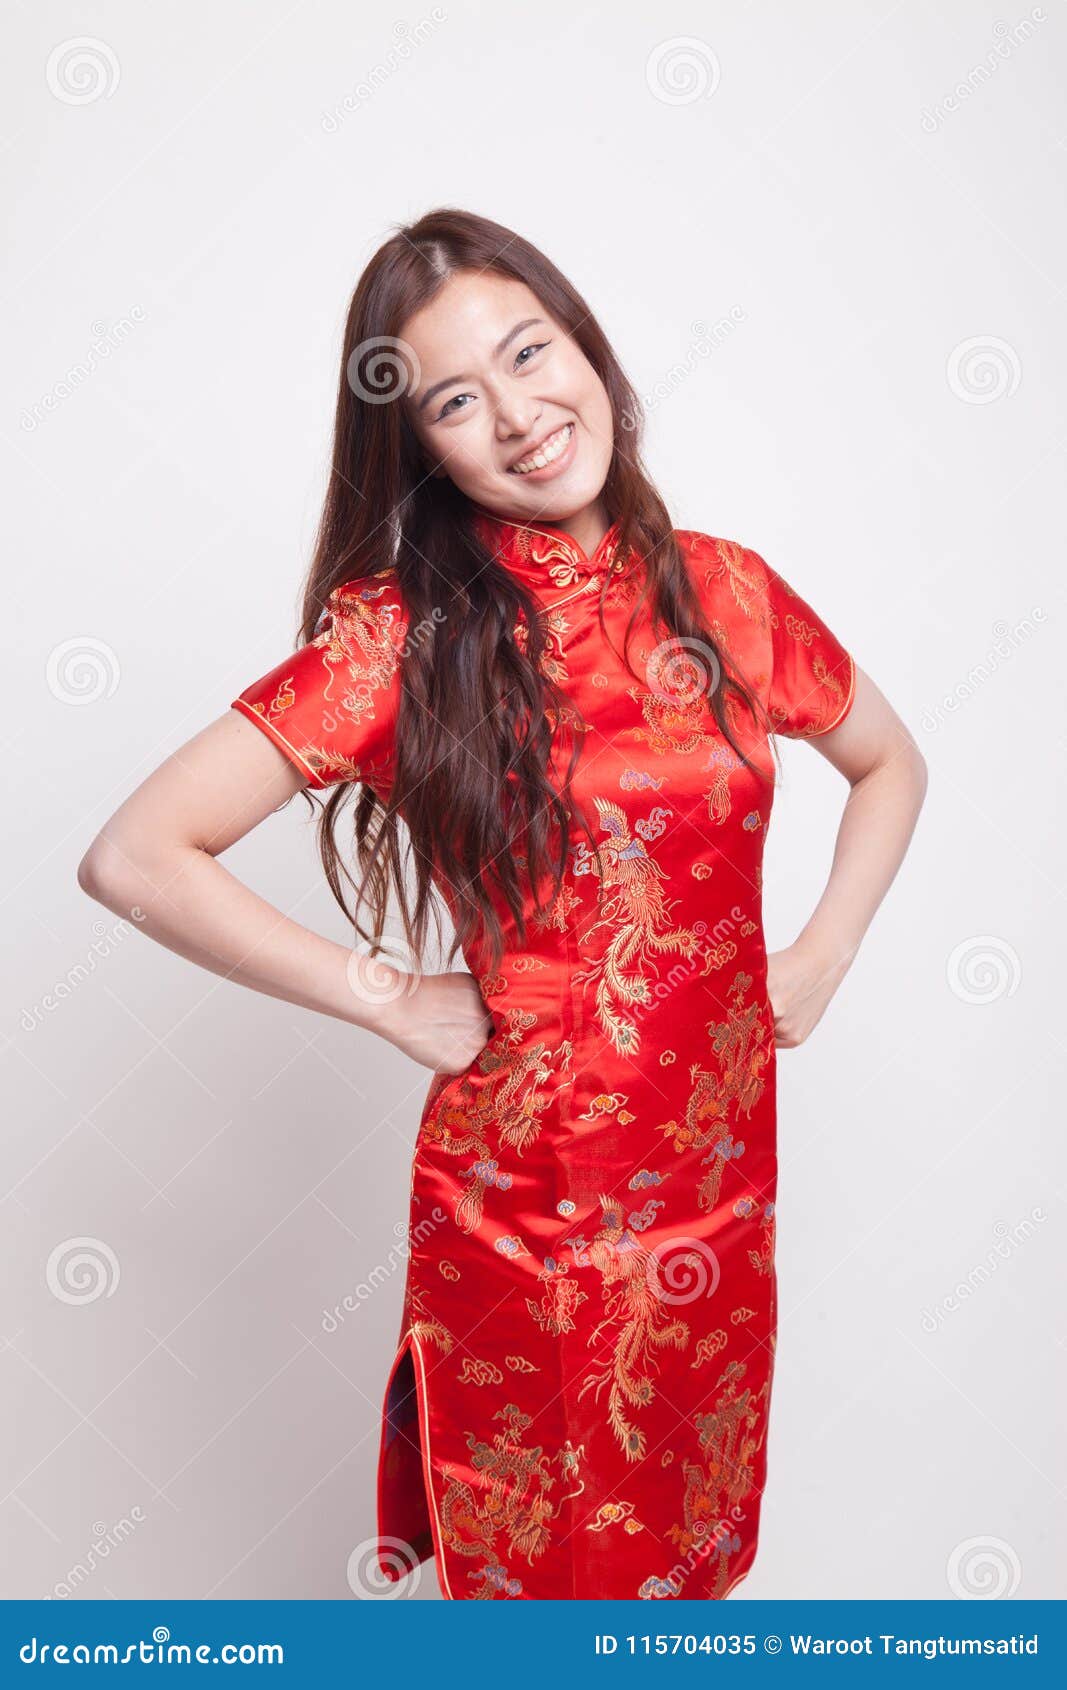 Red Chinese Cheongsam Dress Stock Image ...